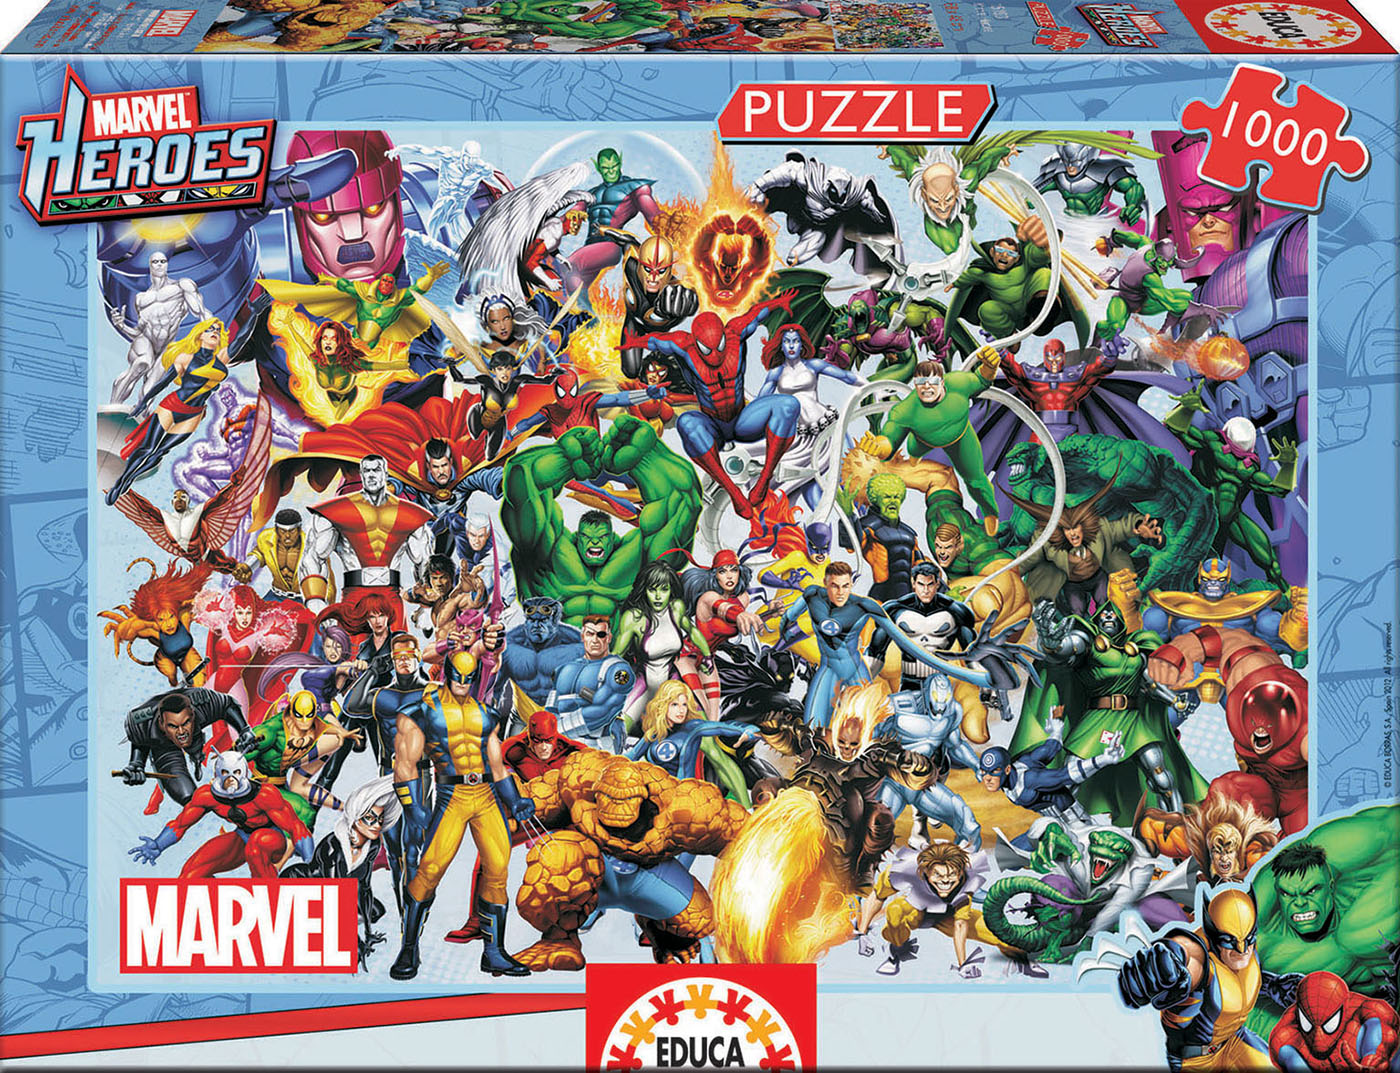 EDUCA Miniature 1000 piece jigsaw puzzle BARCELONA Collage GAUDI Complete!